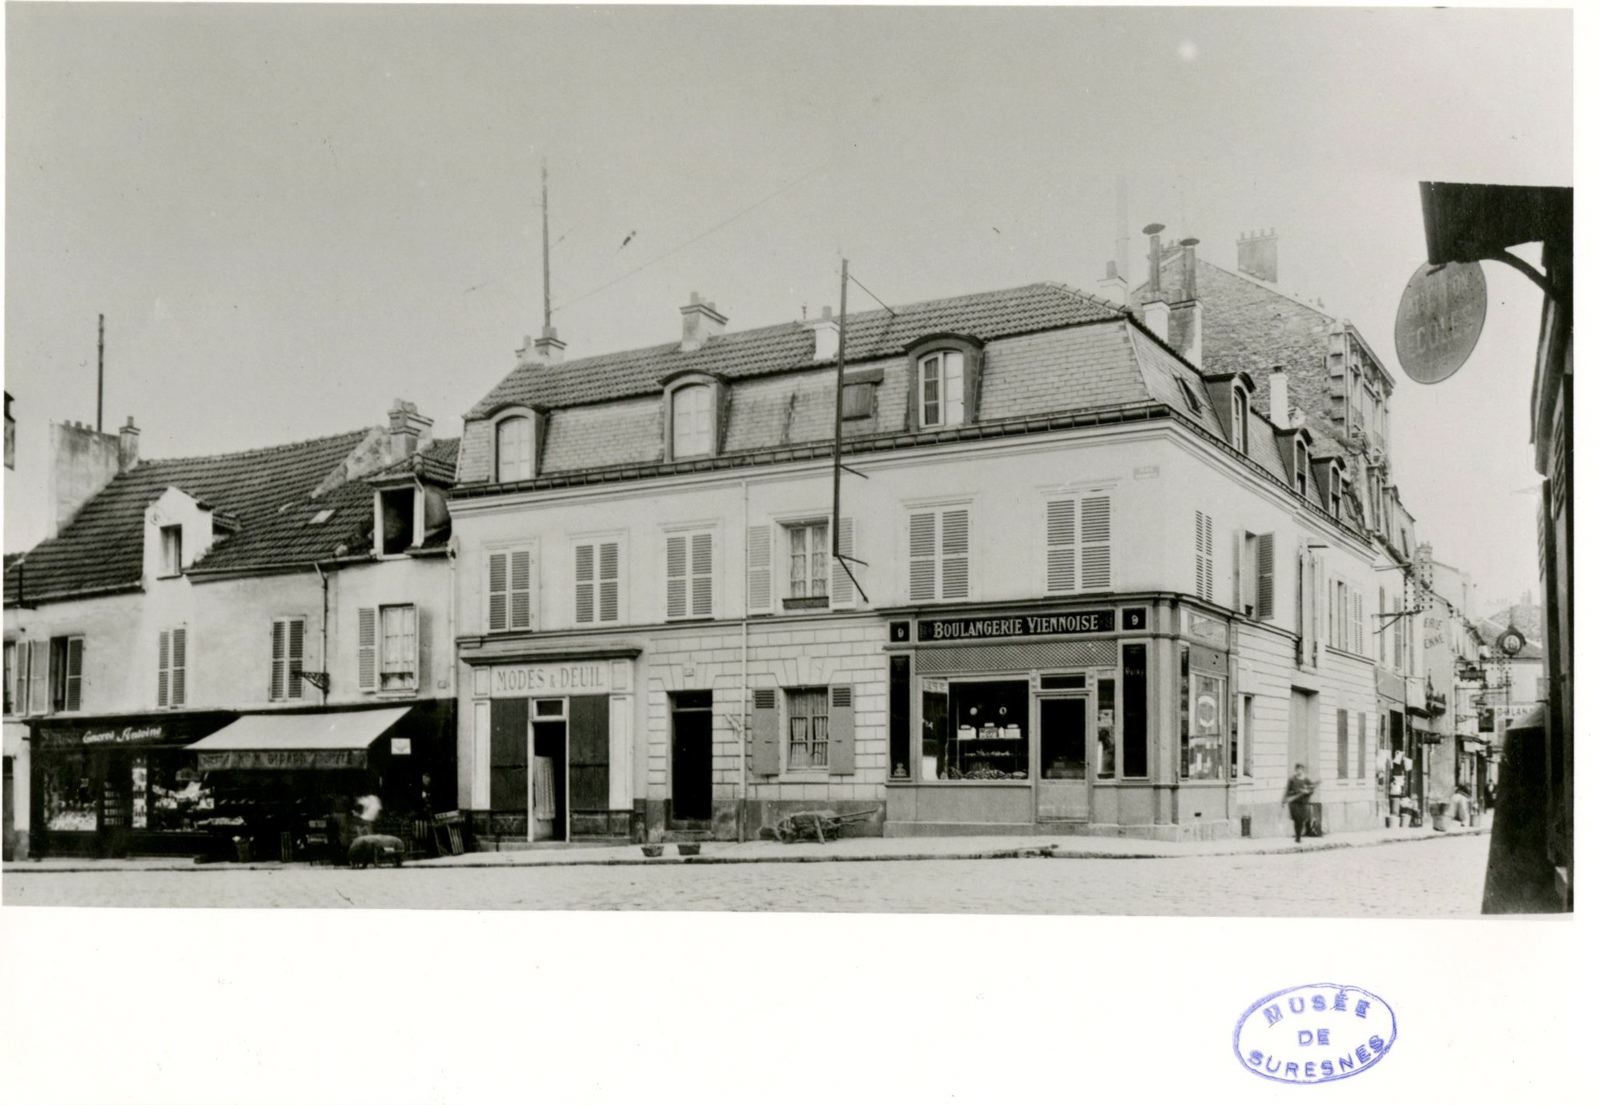 Le coin de la rue du Moutier (Emile Zola) et de la place d'Armes (gal Leclerc), boulangerie Mozin, vers 1925